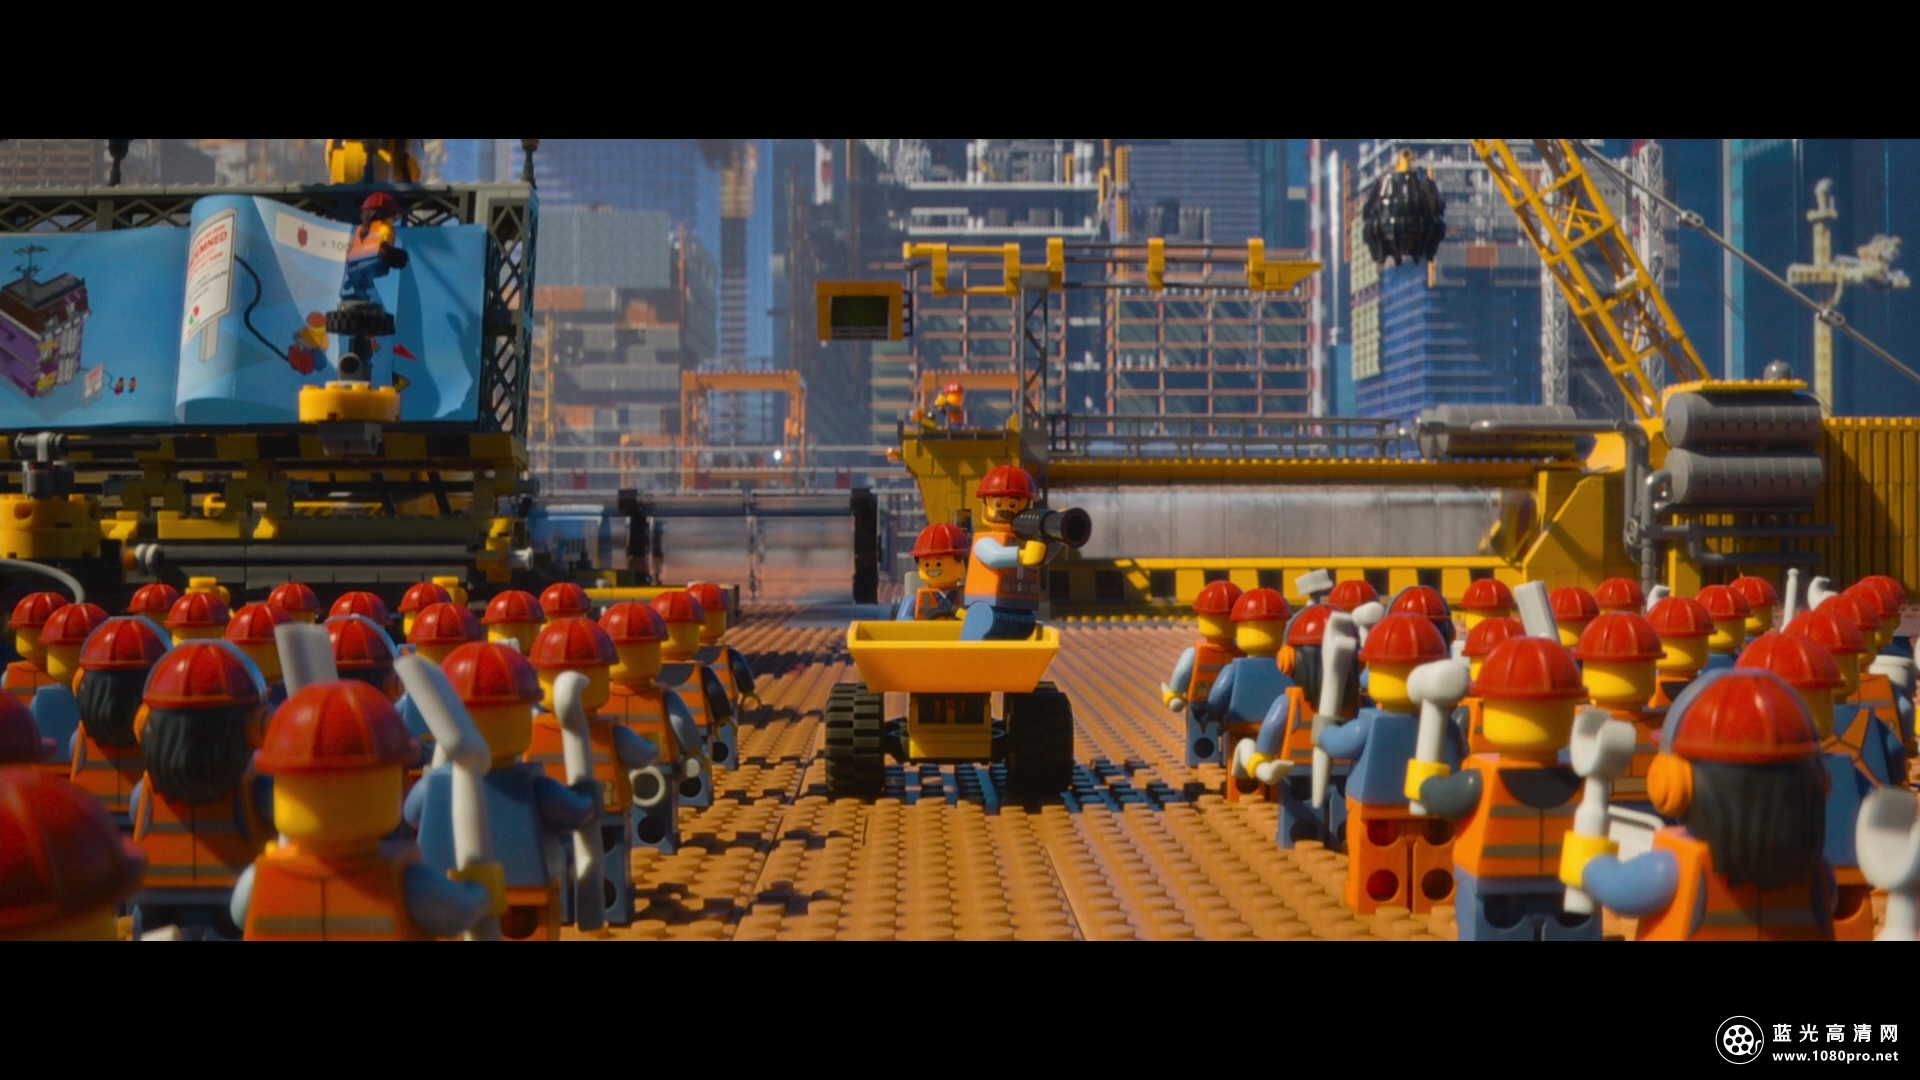 乐高大电影 The.Lego.Movie.2014.3D.BluRay.1080p.AVC.DTS-HD.MA.5.1-tyx@TTG 33GB